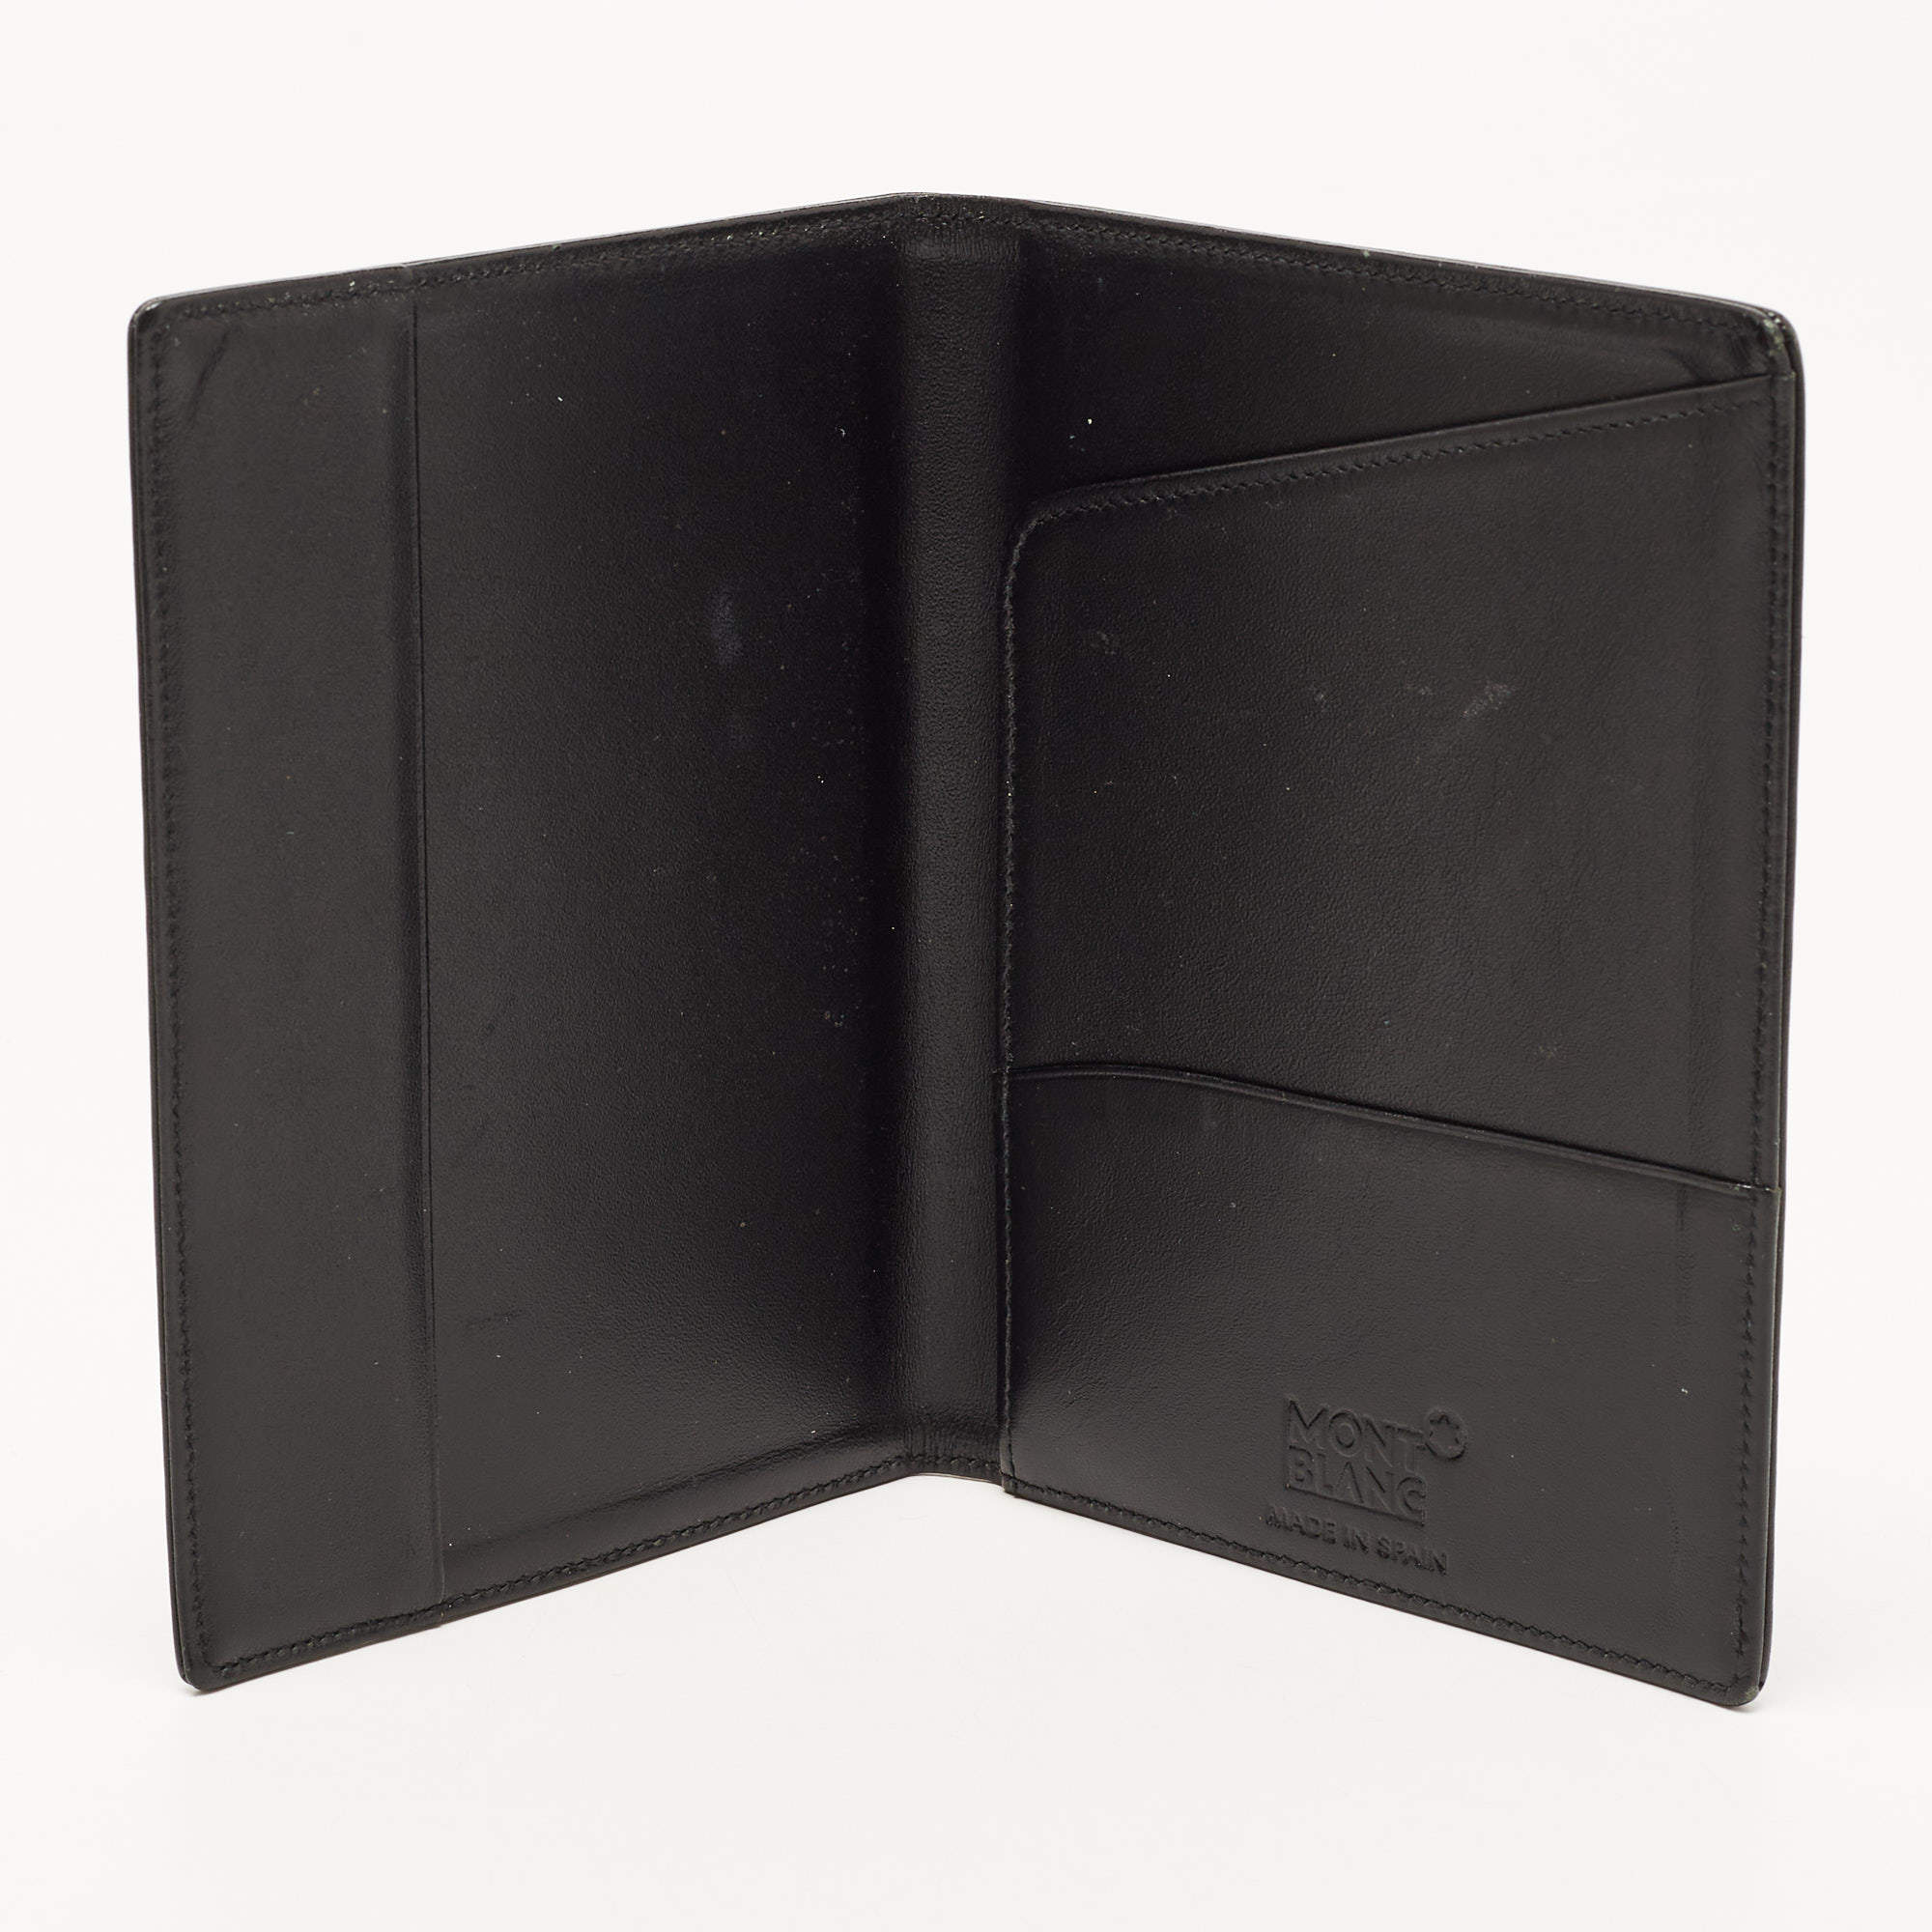 Montblanc Meisterstuck Leather Passport Holder - Black